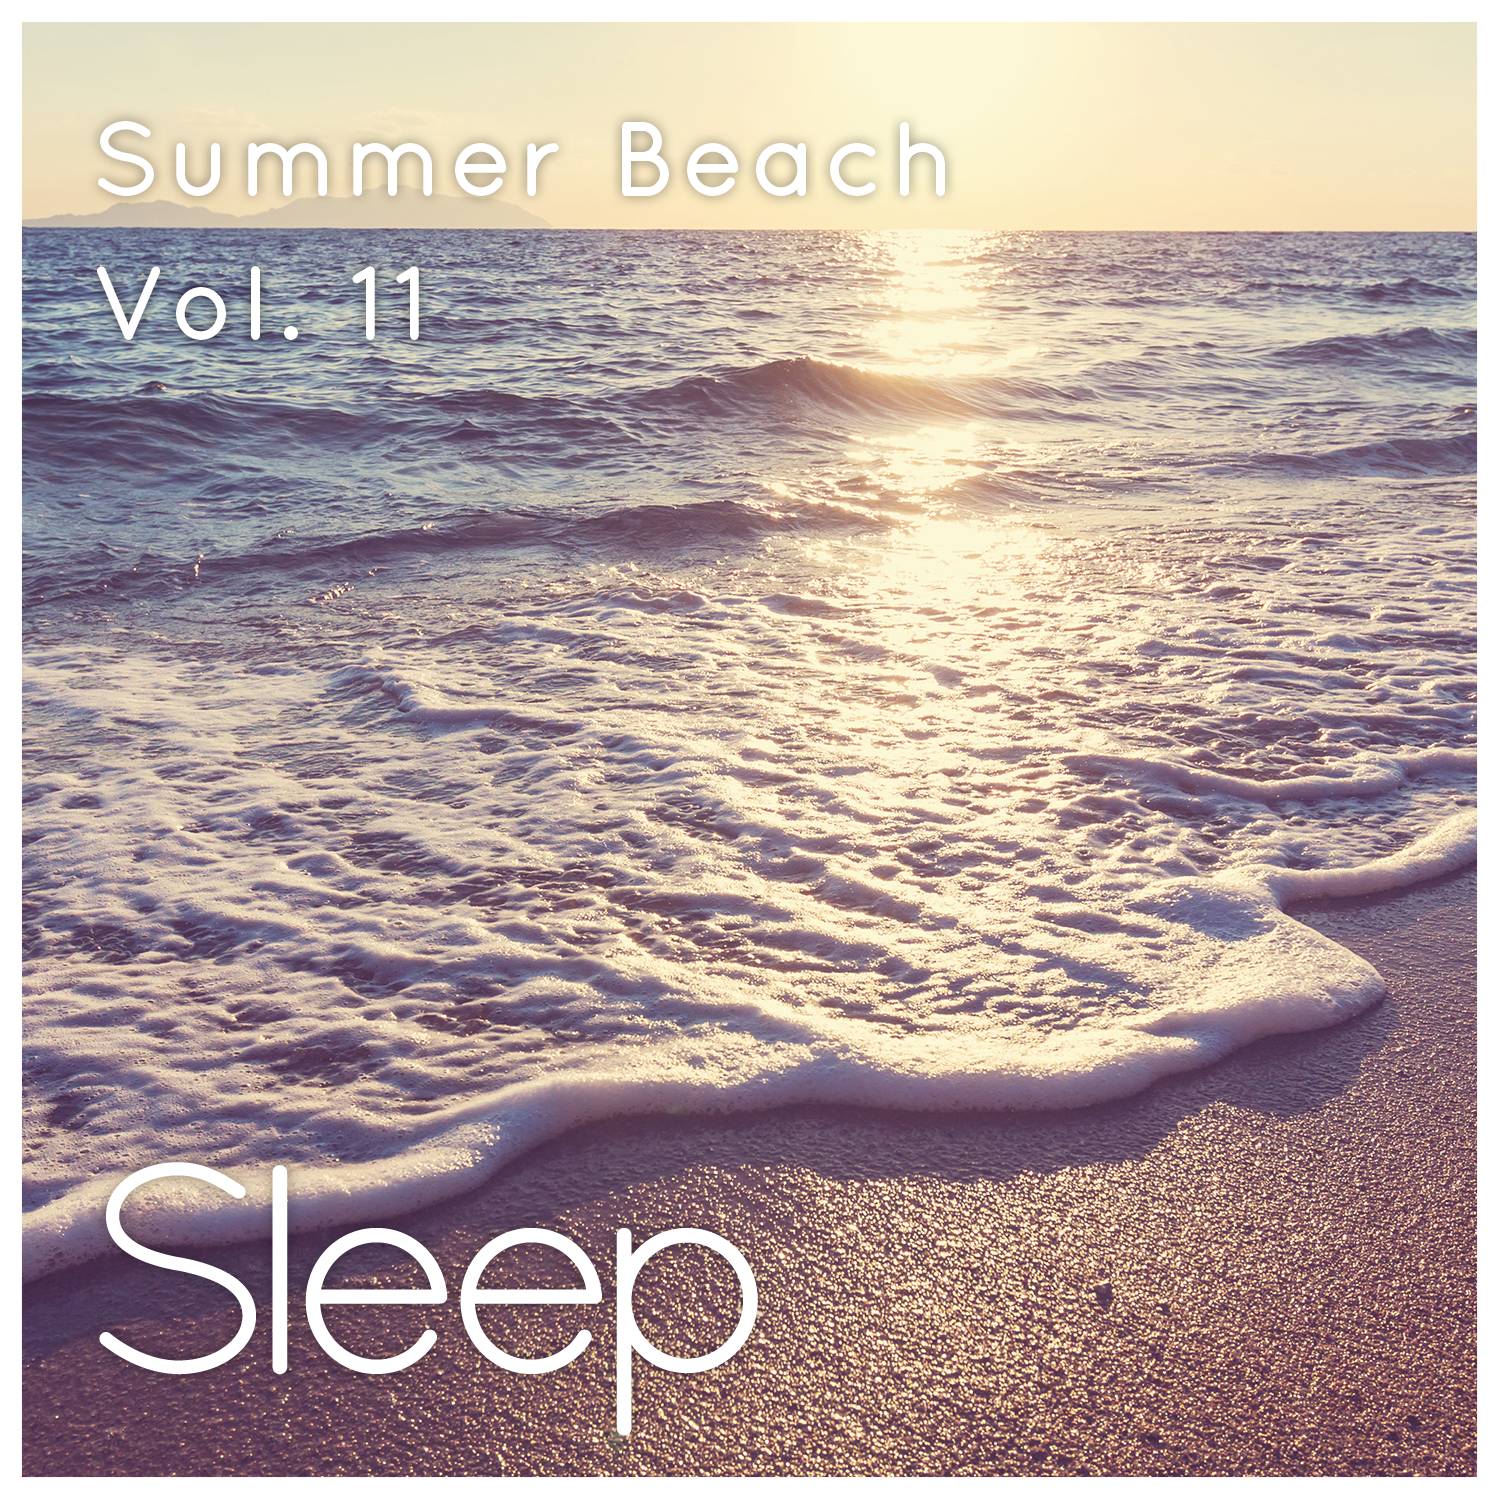 Summer Sleep at the Beach, Pt. 52